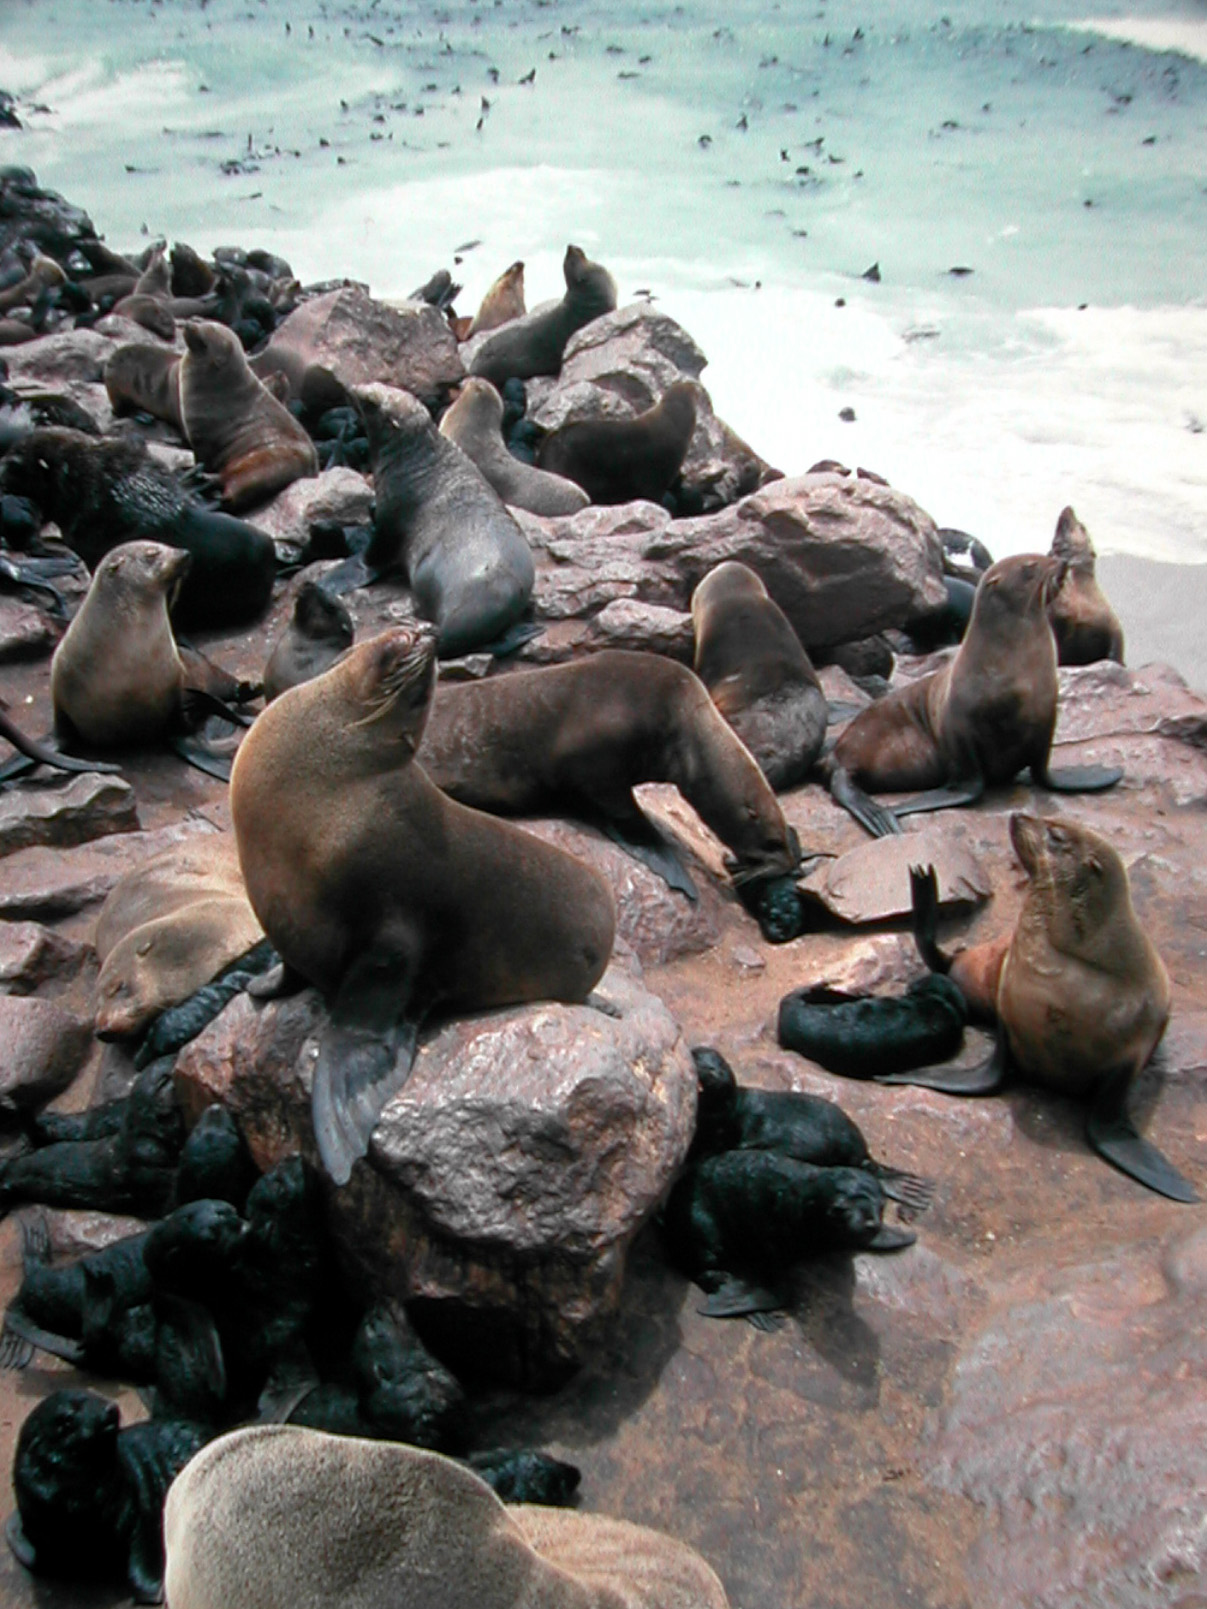 Fur seal - Wikipedia